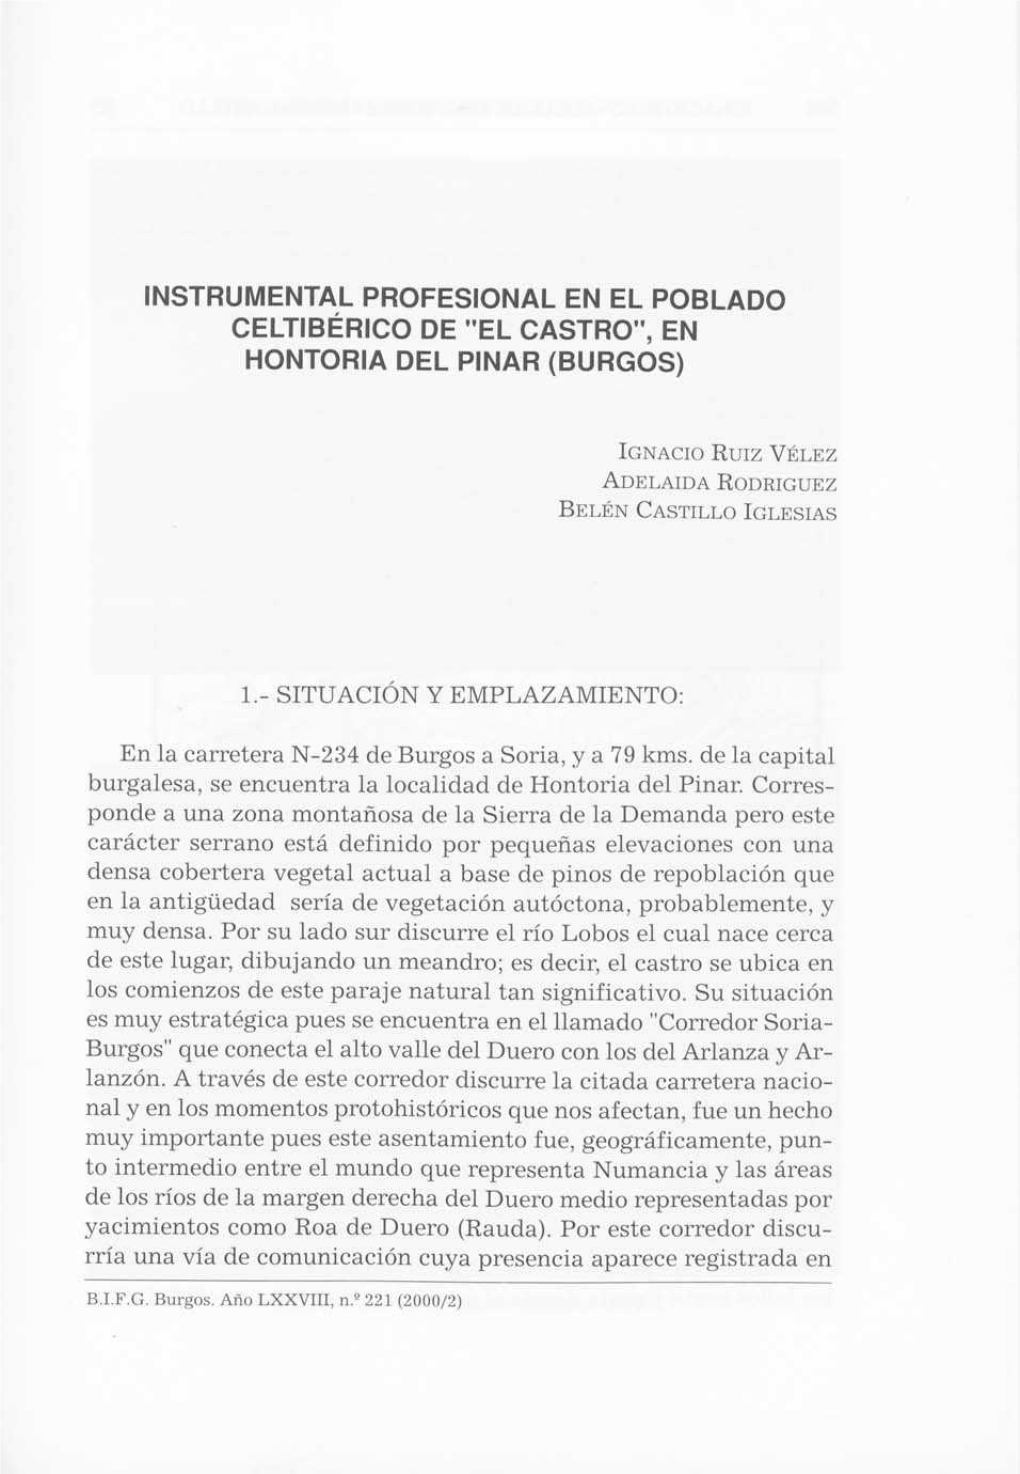 Instrumental Profesional En El Poblado Celtiberico De "El Castro", En Hontoria Del Pinar (Burgos)